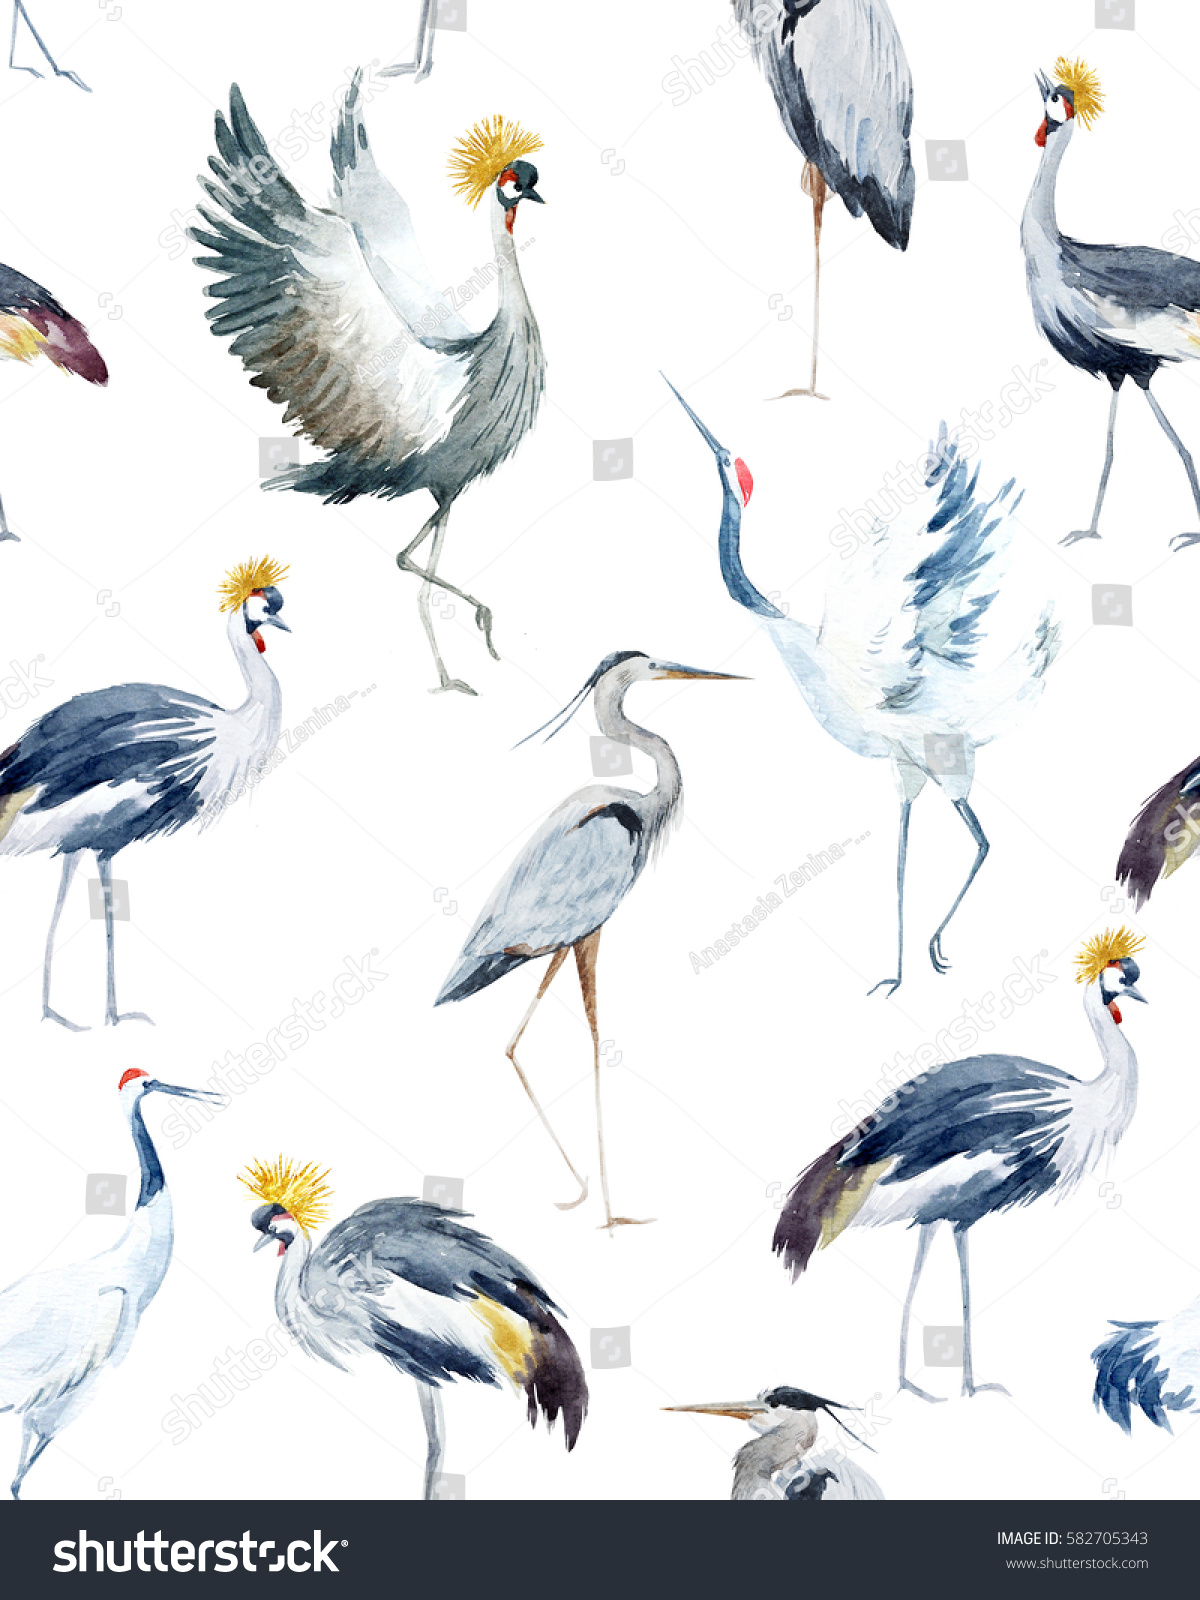 鳥の水彩柄 アフリカ産のクレーン 白い鶴 グレイのサギ 鳥の壁紙 のイラスト素材